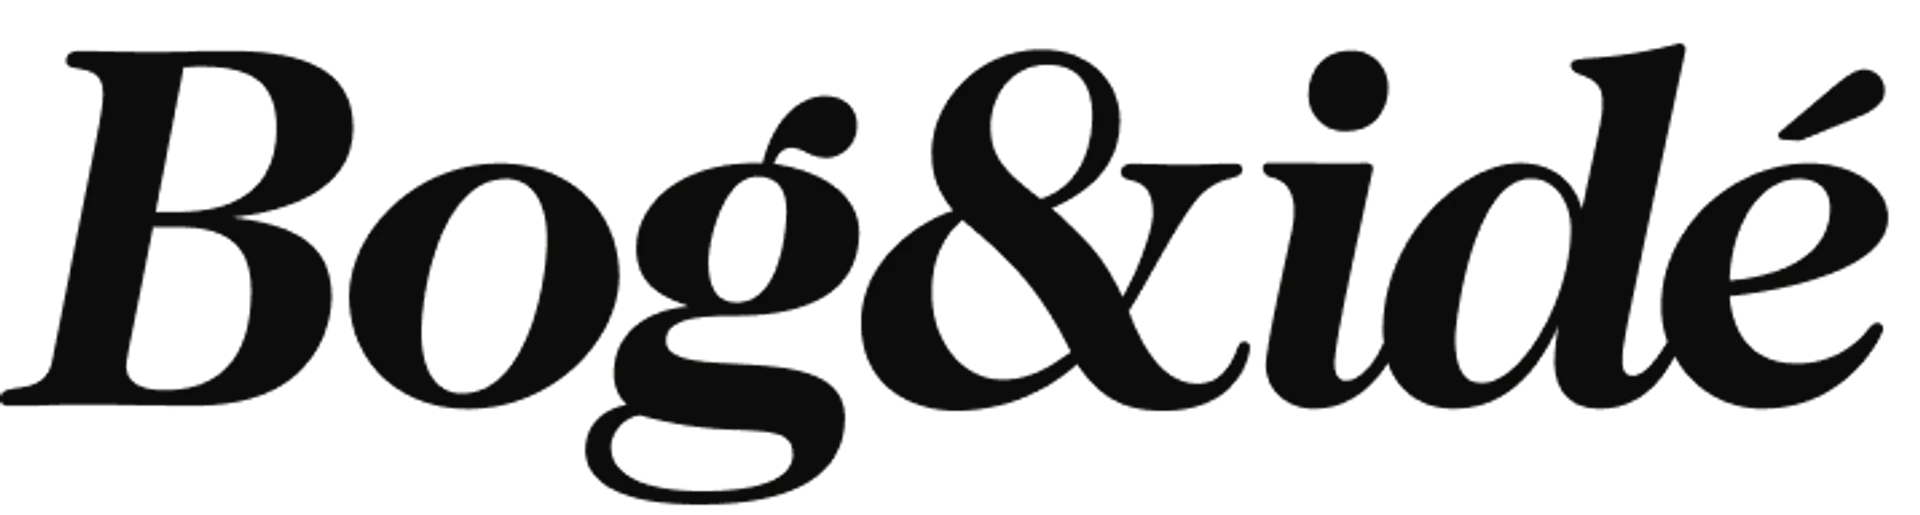 BOG & IDÉ logo of current catalogue